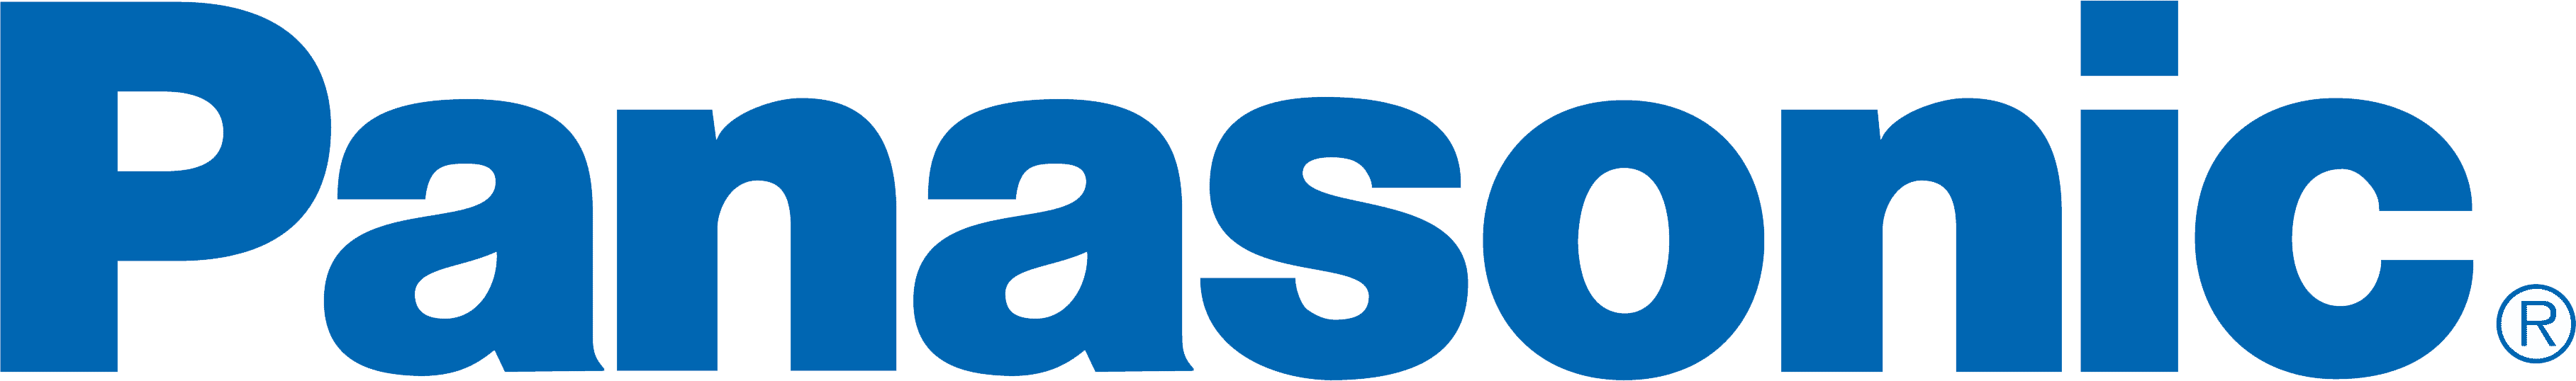 Panasonic-logo